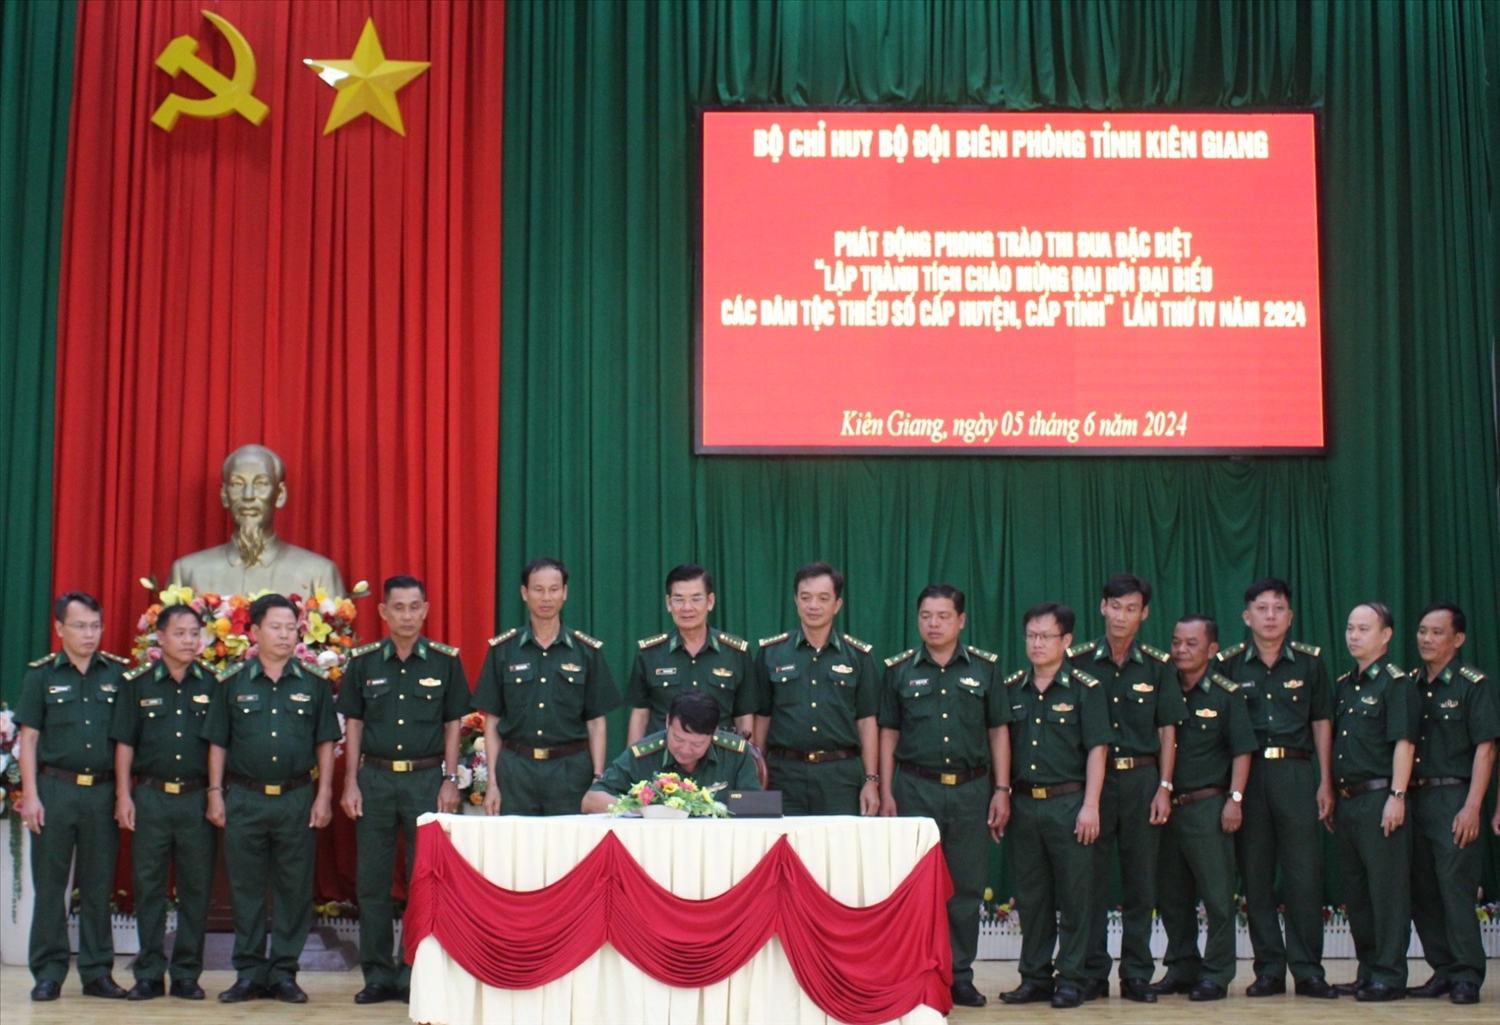 Đại diện cơ quan, đơn vị trong lực lượng BĐBP tỉnh Kiên Giang ký kết giao ước thi đua